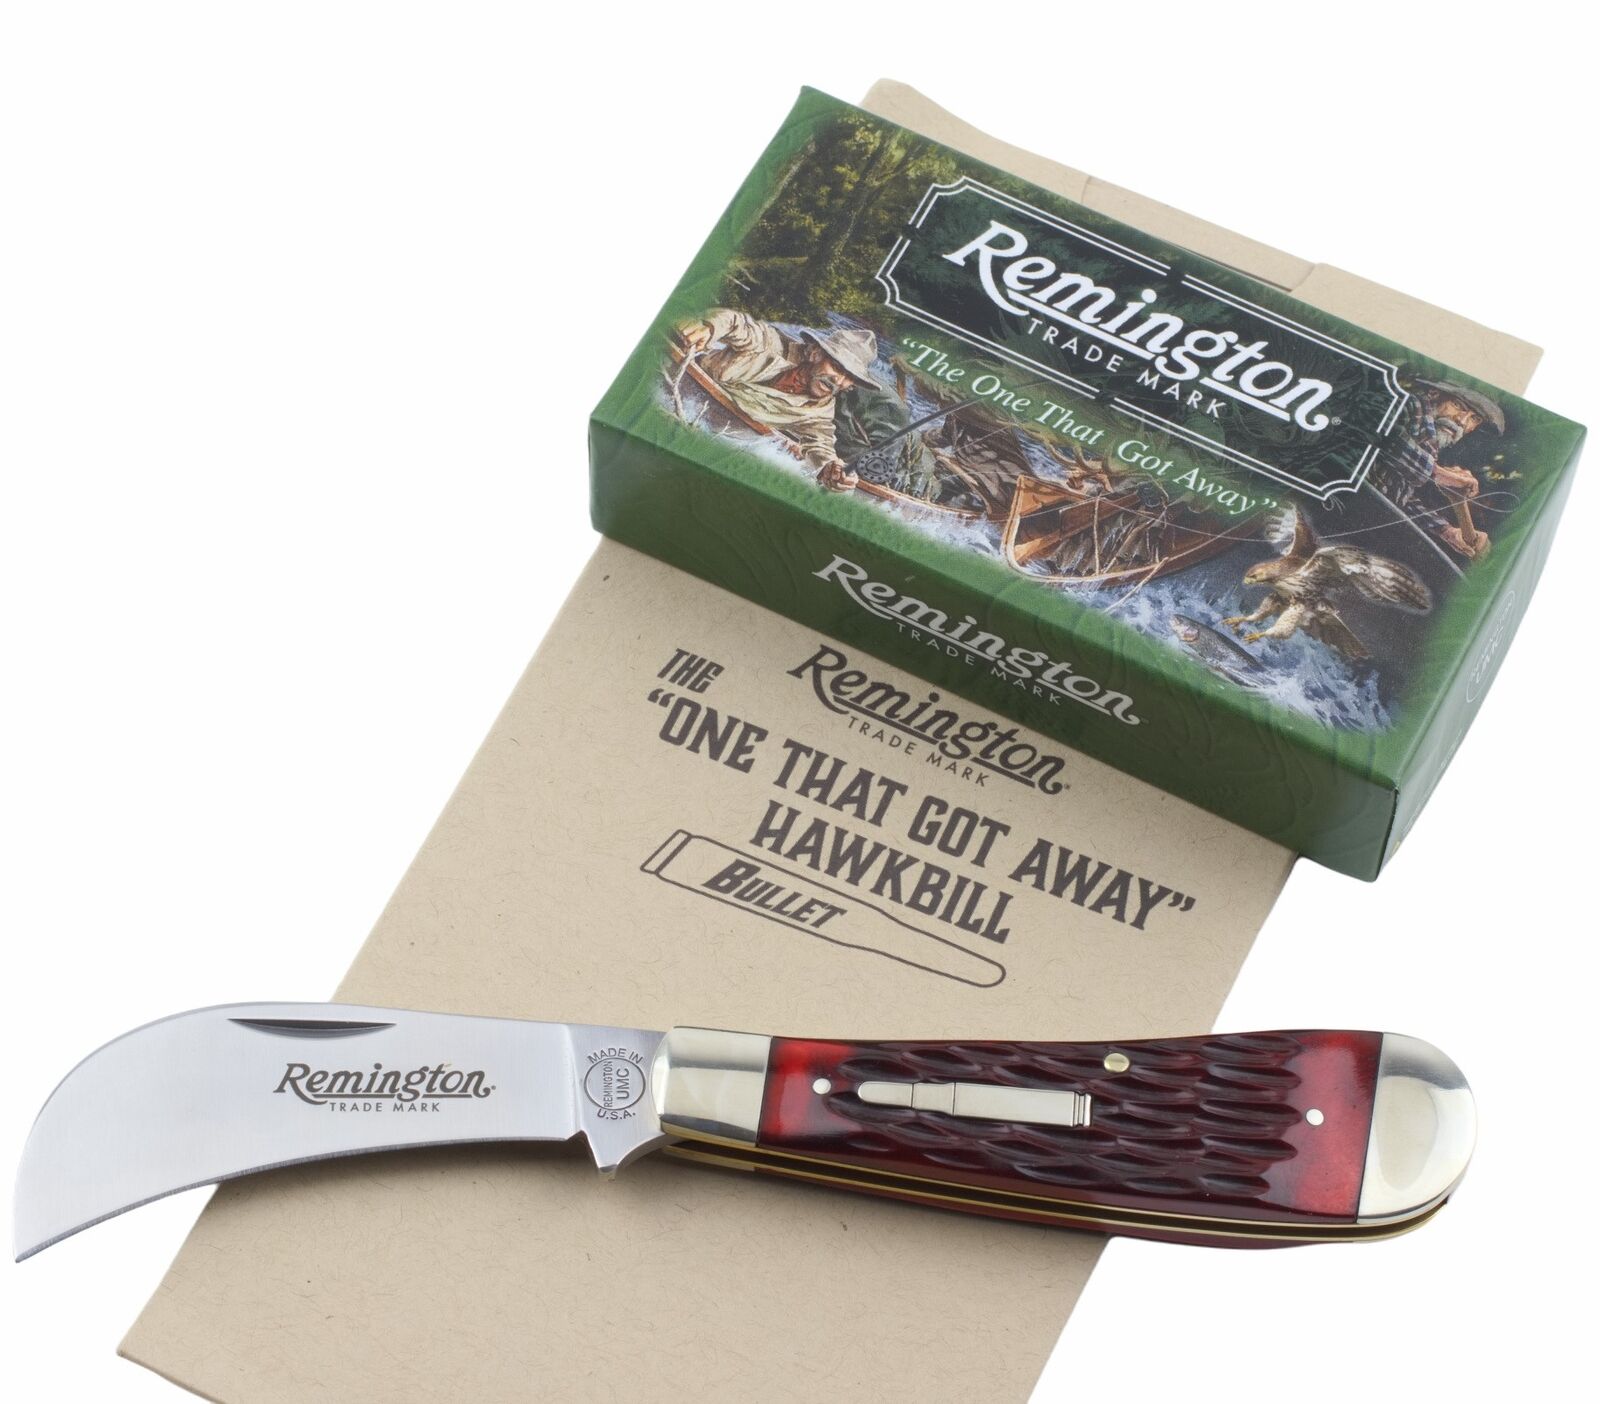 Remington 2023 Hawkbill Bullet Folding Knife One That Got Away